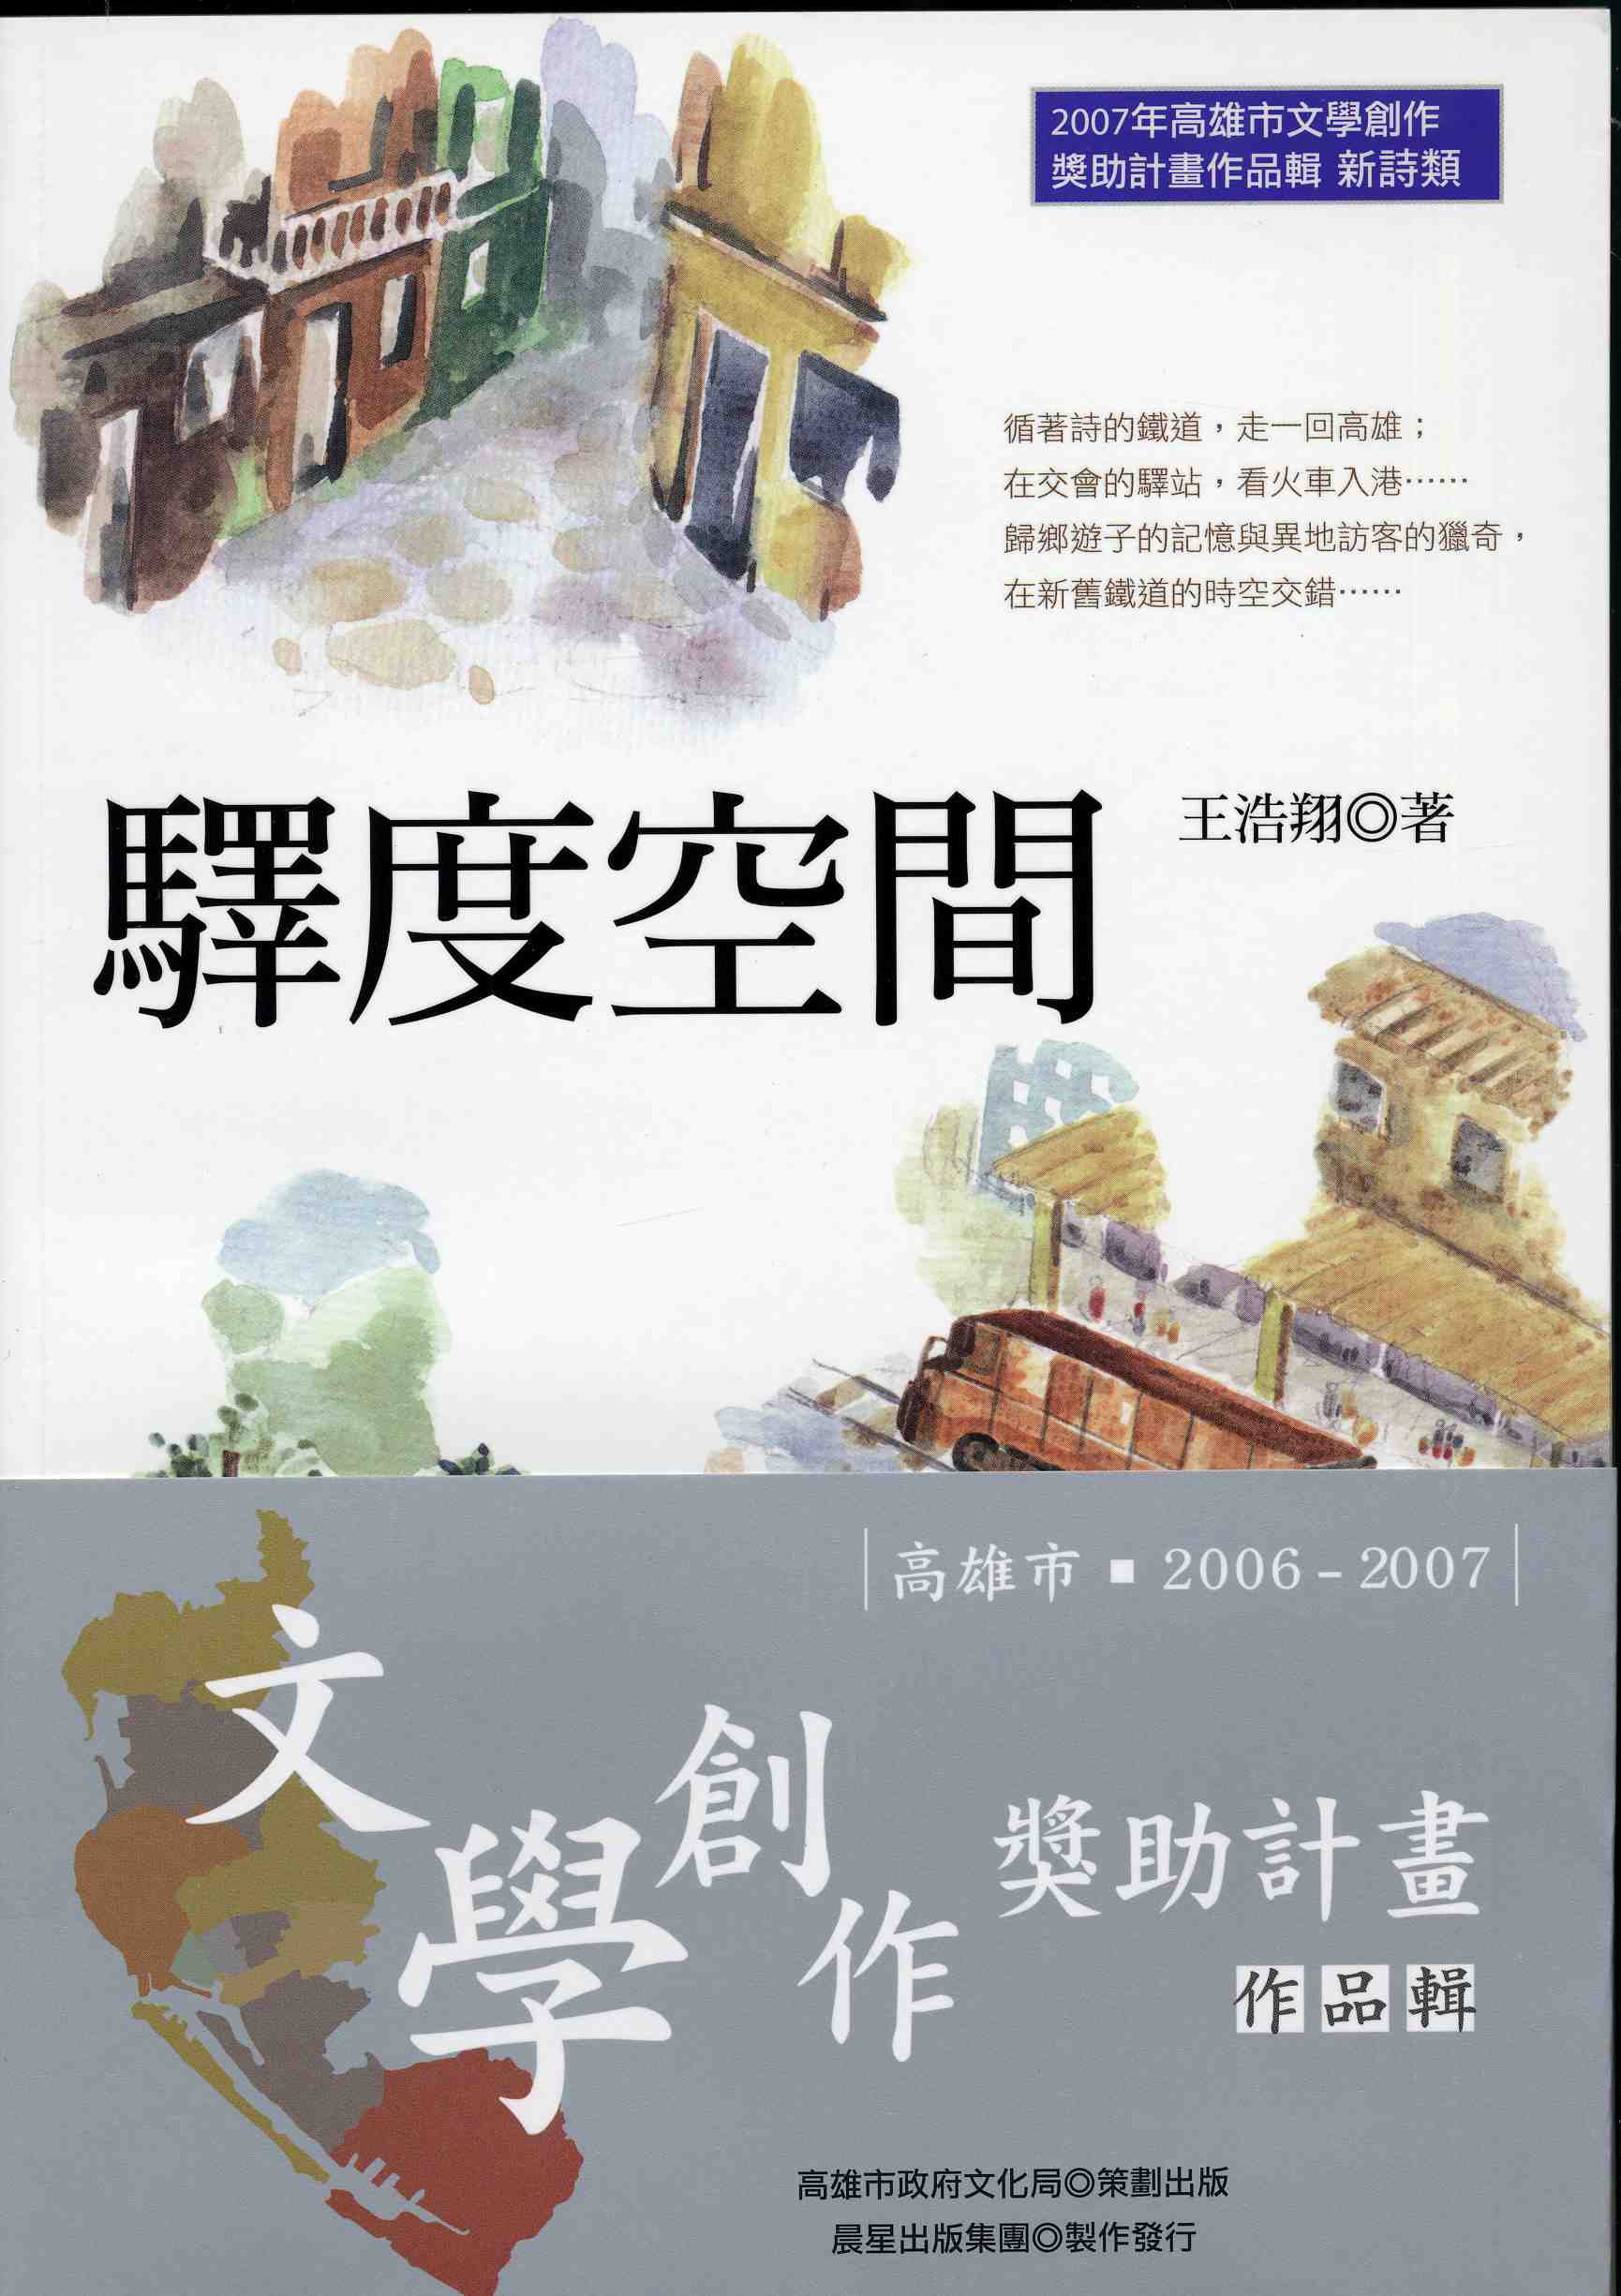 2006-7高雄文學創作獎助作品輯1-6(3)<驛度空間>王浩翔(2007)新詩類